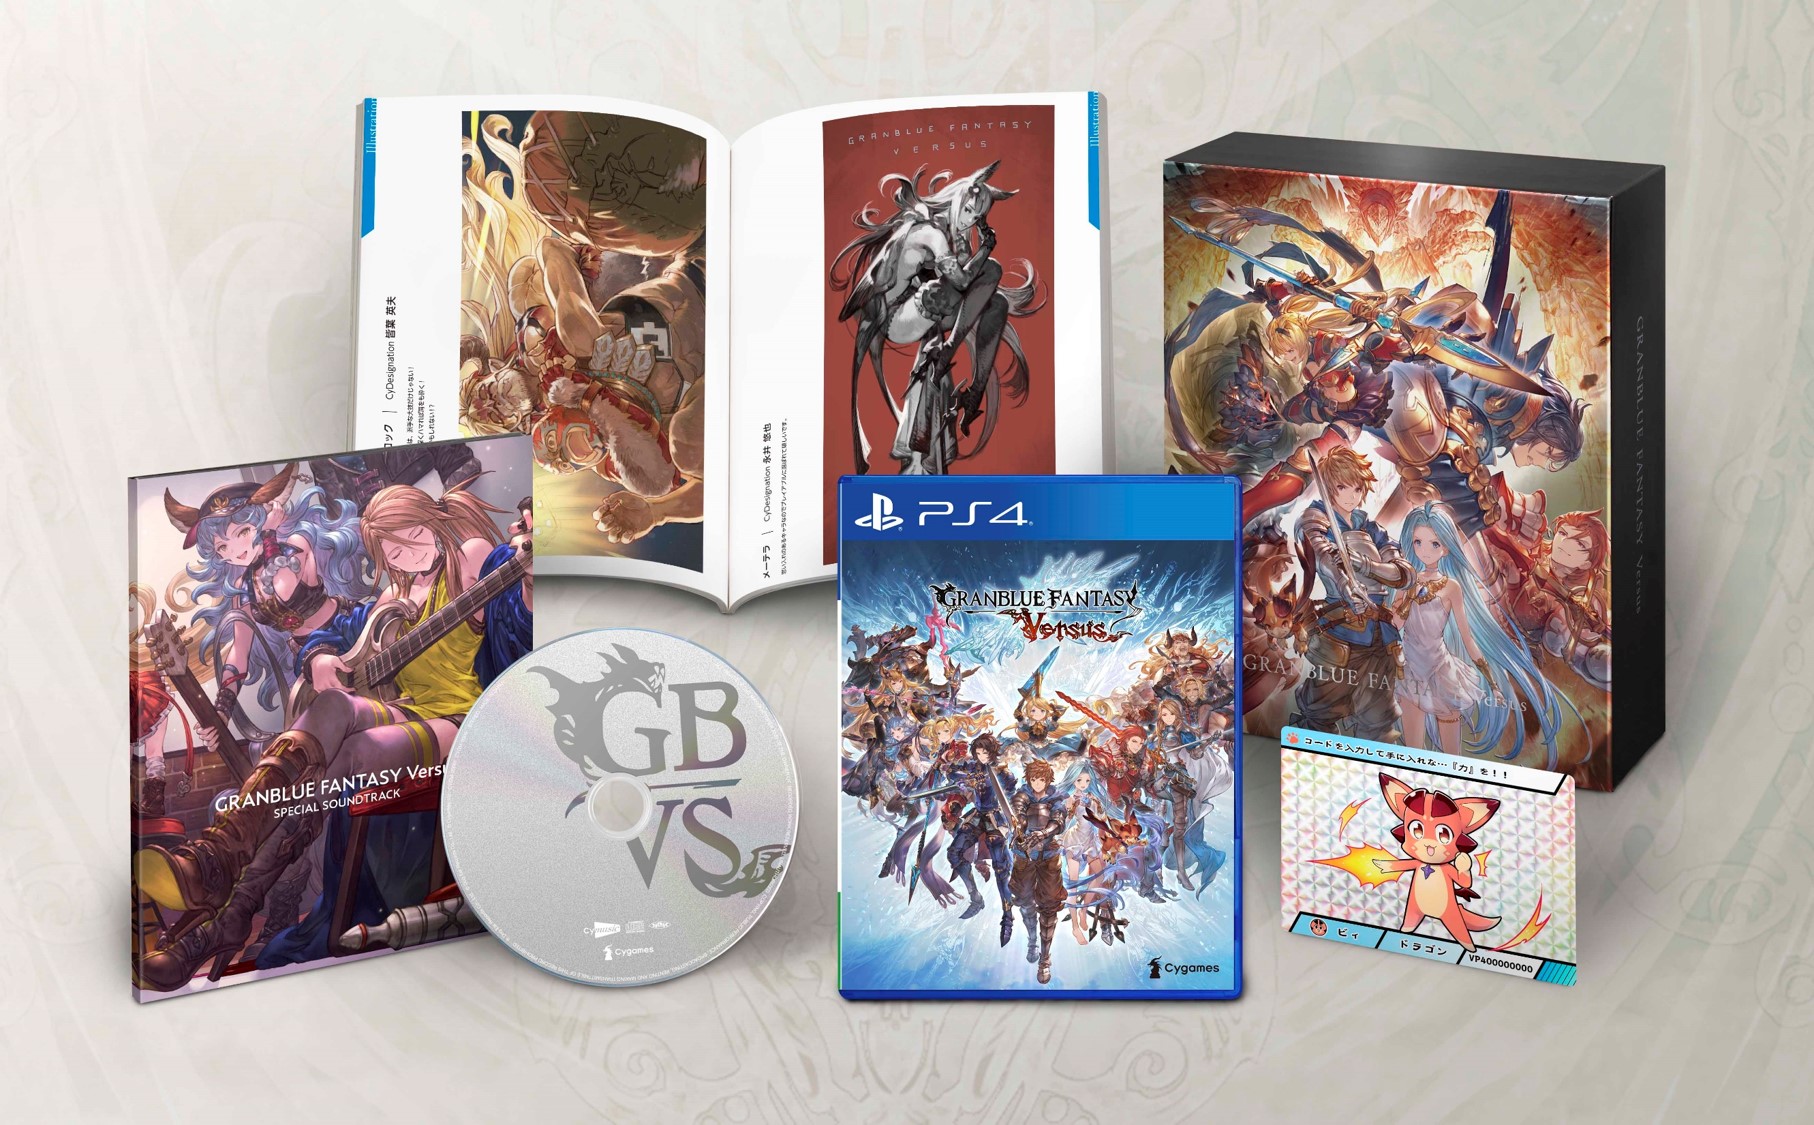 《碧蓝幻想Versus》将发售中文限定版 特典内容公开